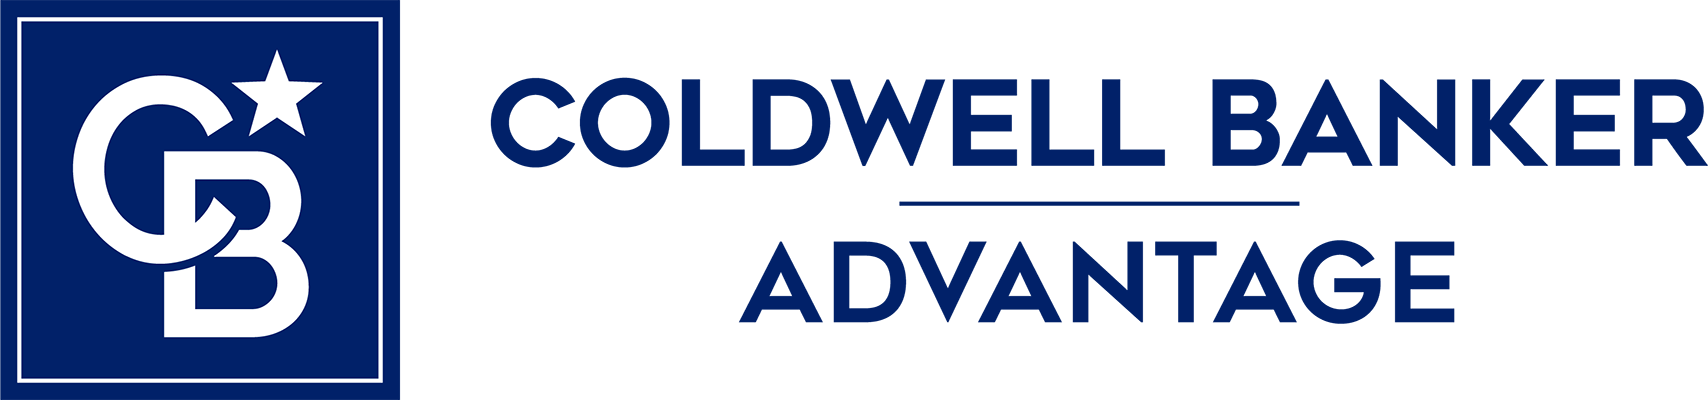 Caitlin Ryland - Coldwell Banker Advantage Logo